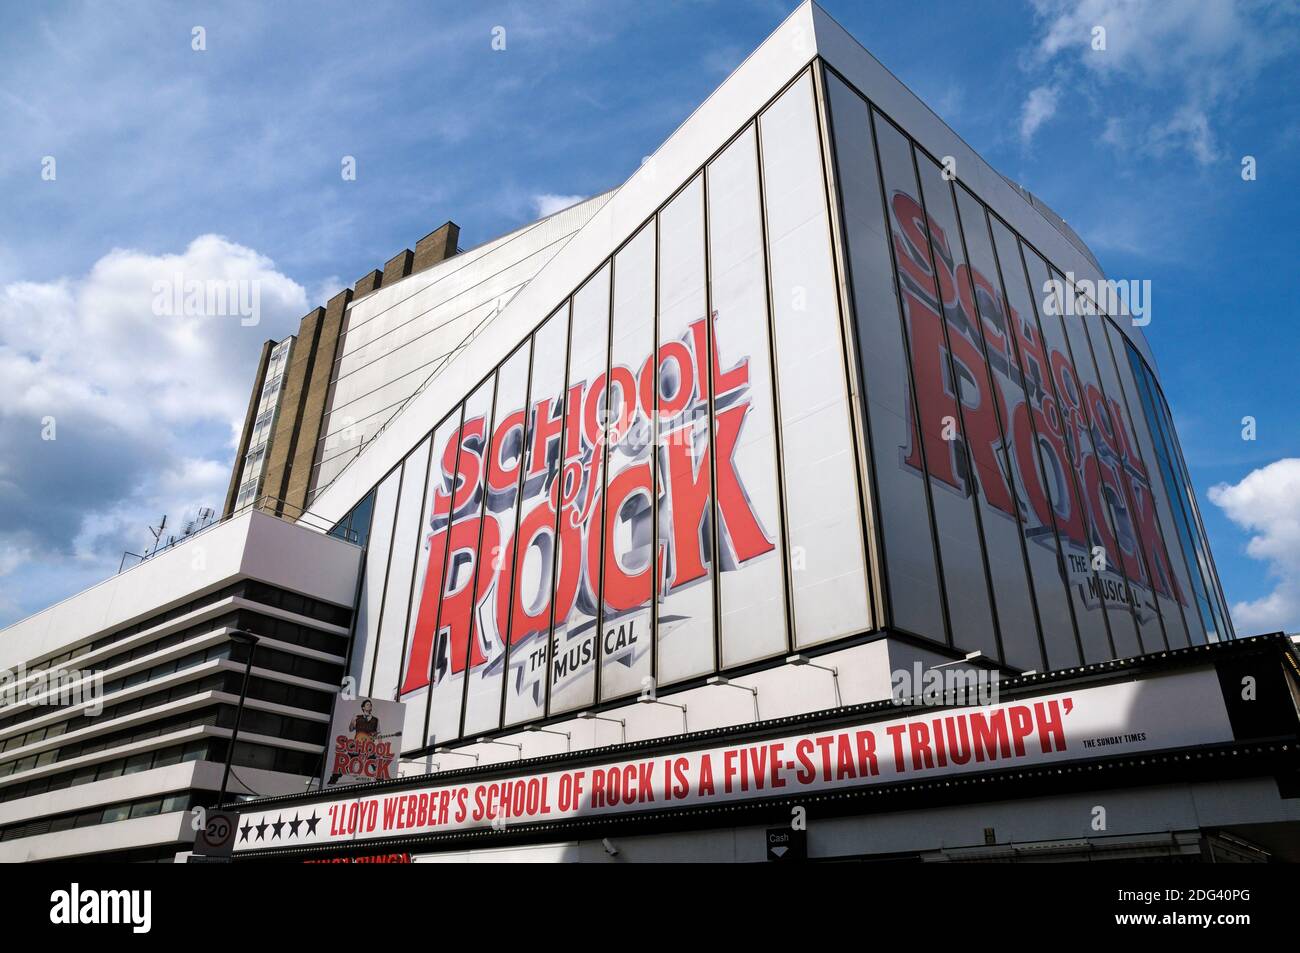 Escuela de Rock musical tocando en el Teatro Gillian Lynne (antes conocido como el Teatro New London), Drury Lane, Londres, Inglaterra, Reino Unido Foto de stock